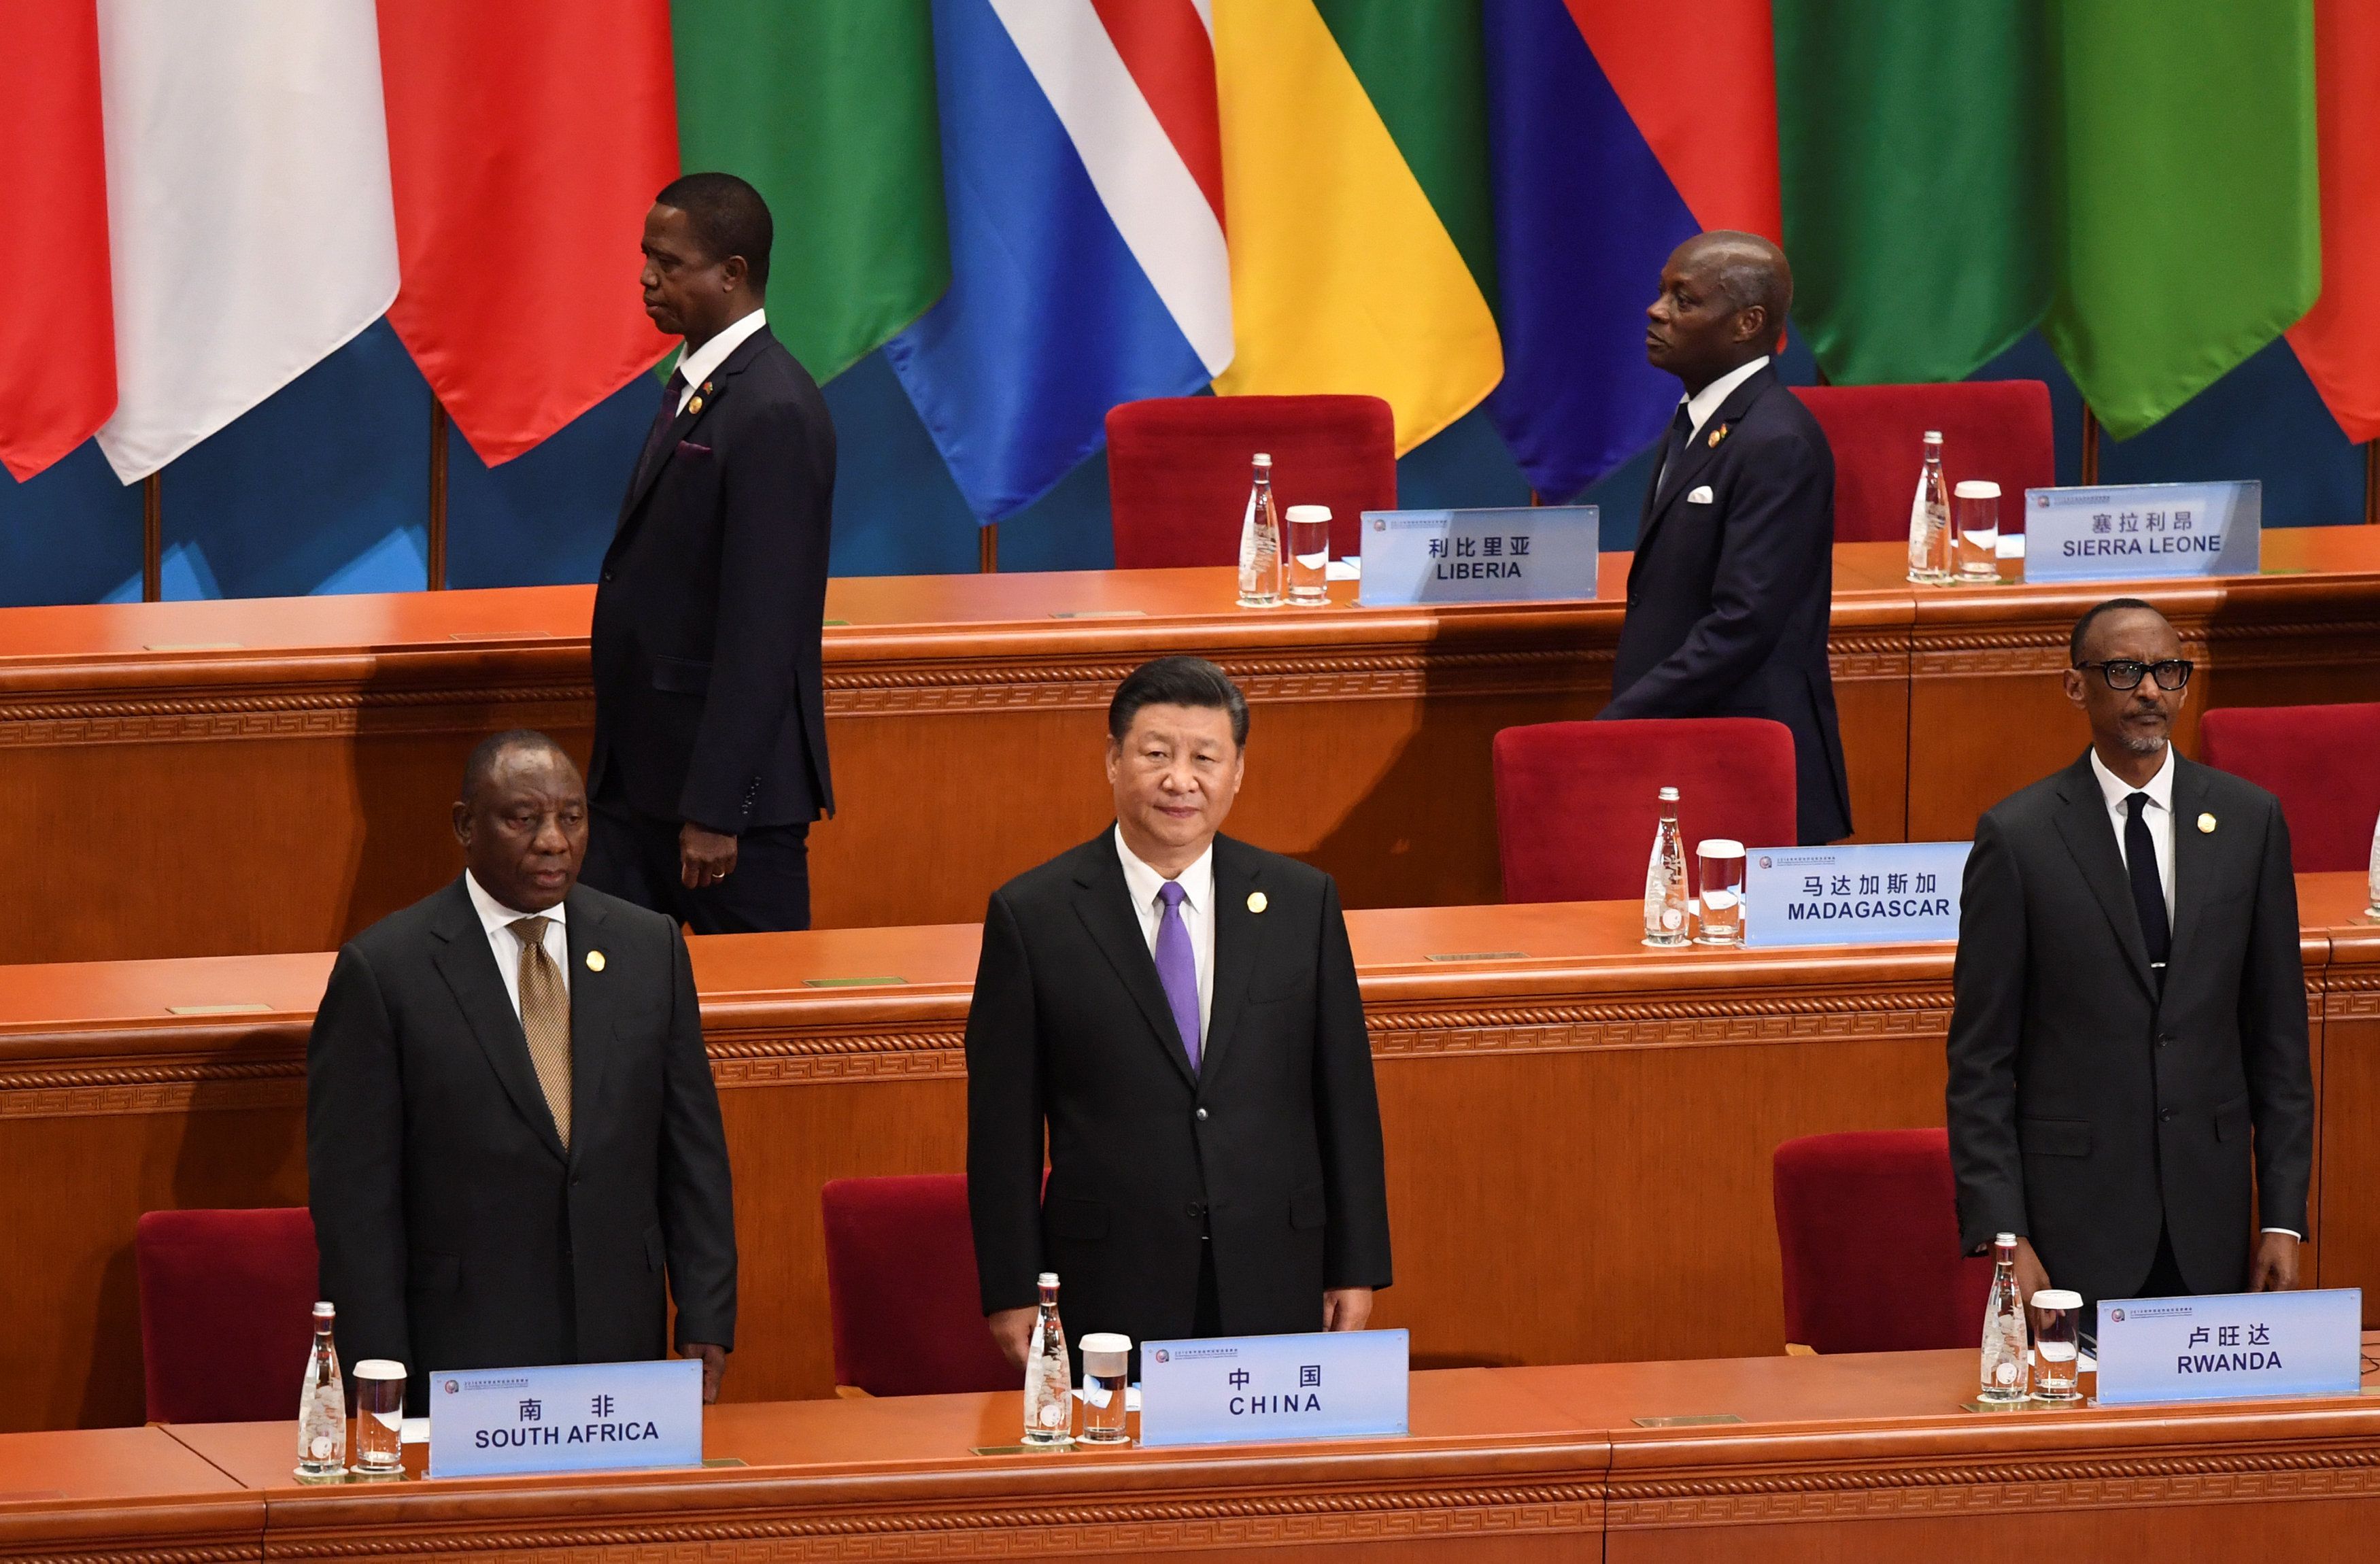 El presidente chino expresó su deseo que todos los países se orienten a realizar cualquier actividad en África.